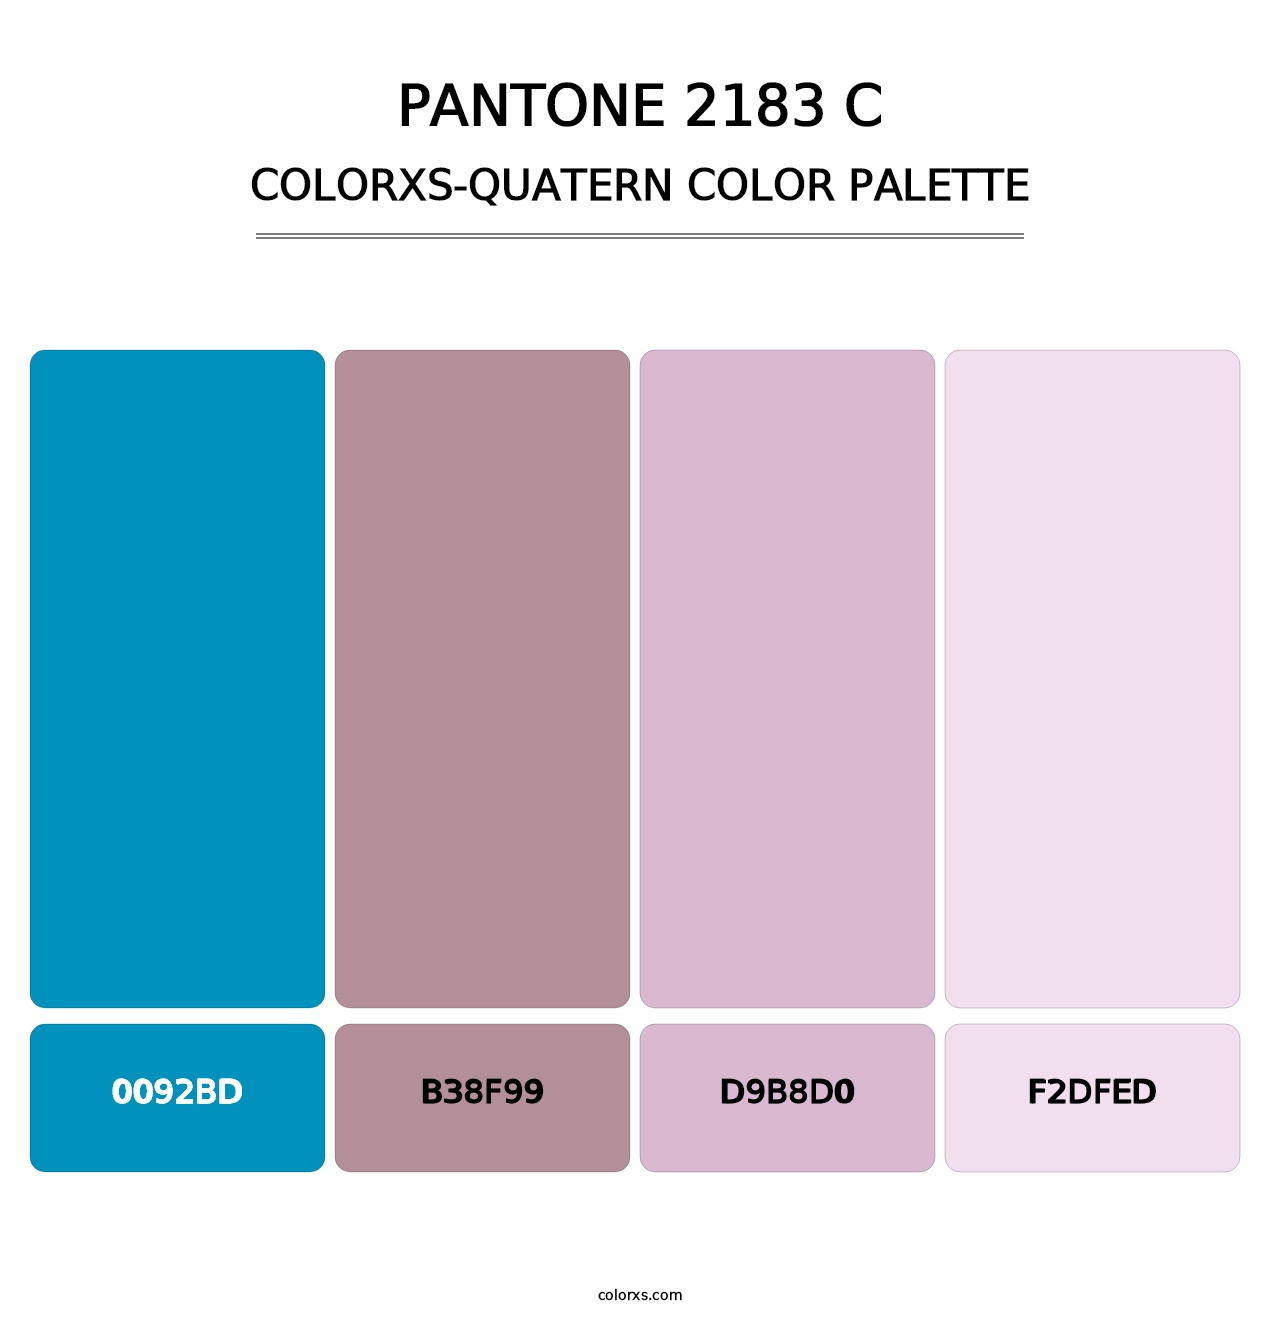 PANTONE 2183 C - Colorxs Quatern Palette